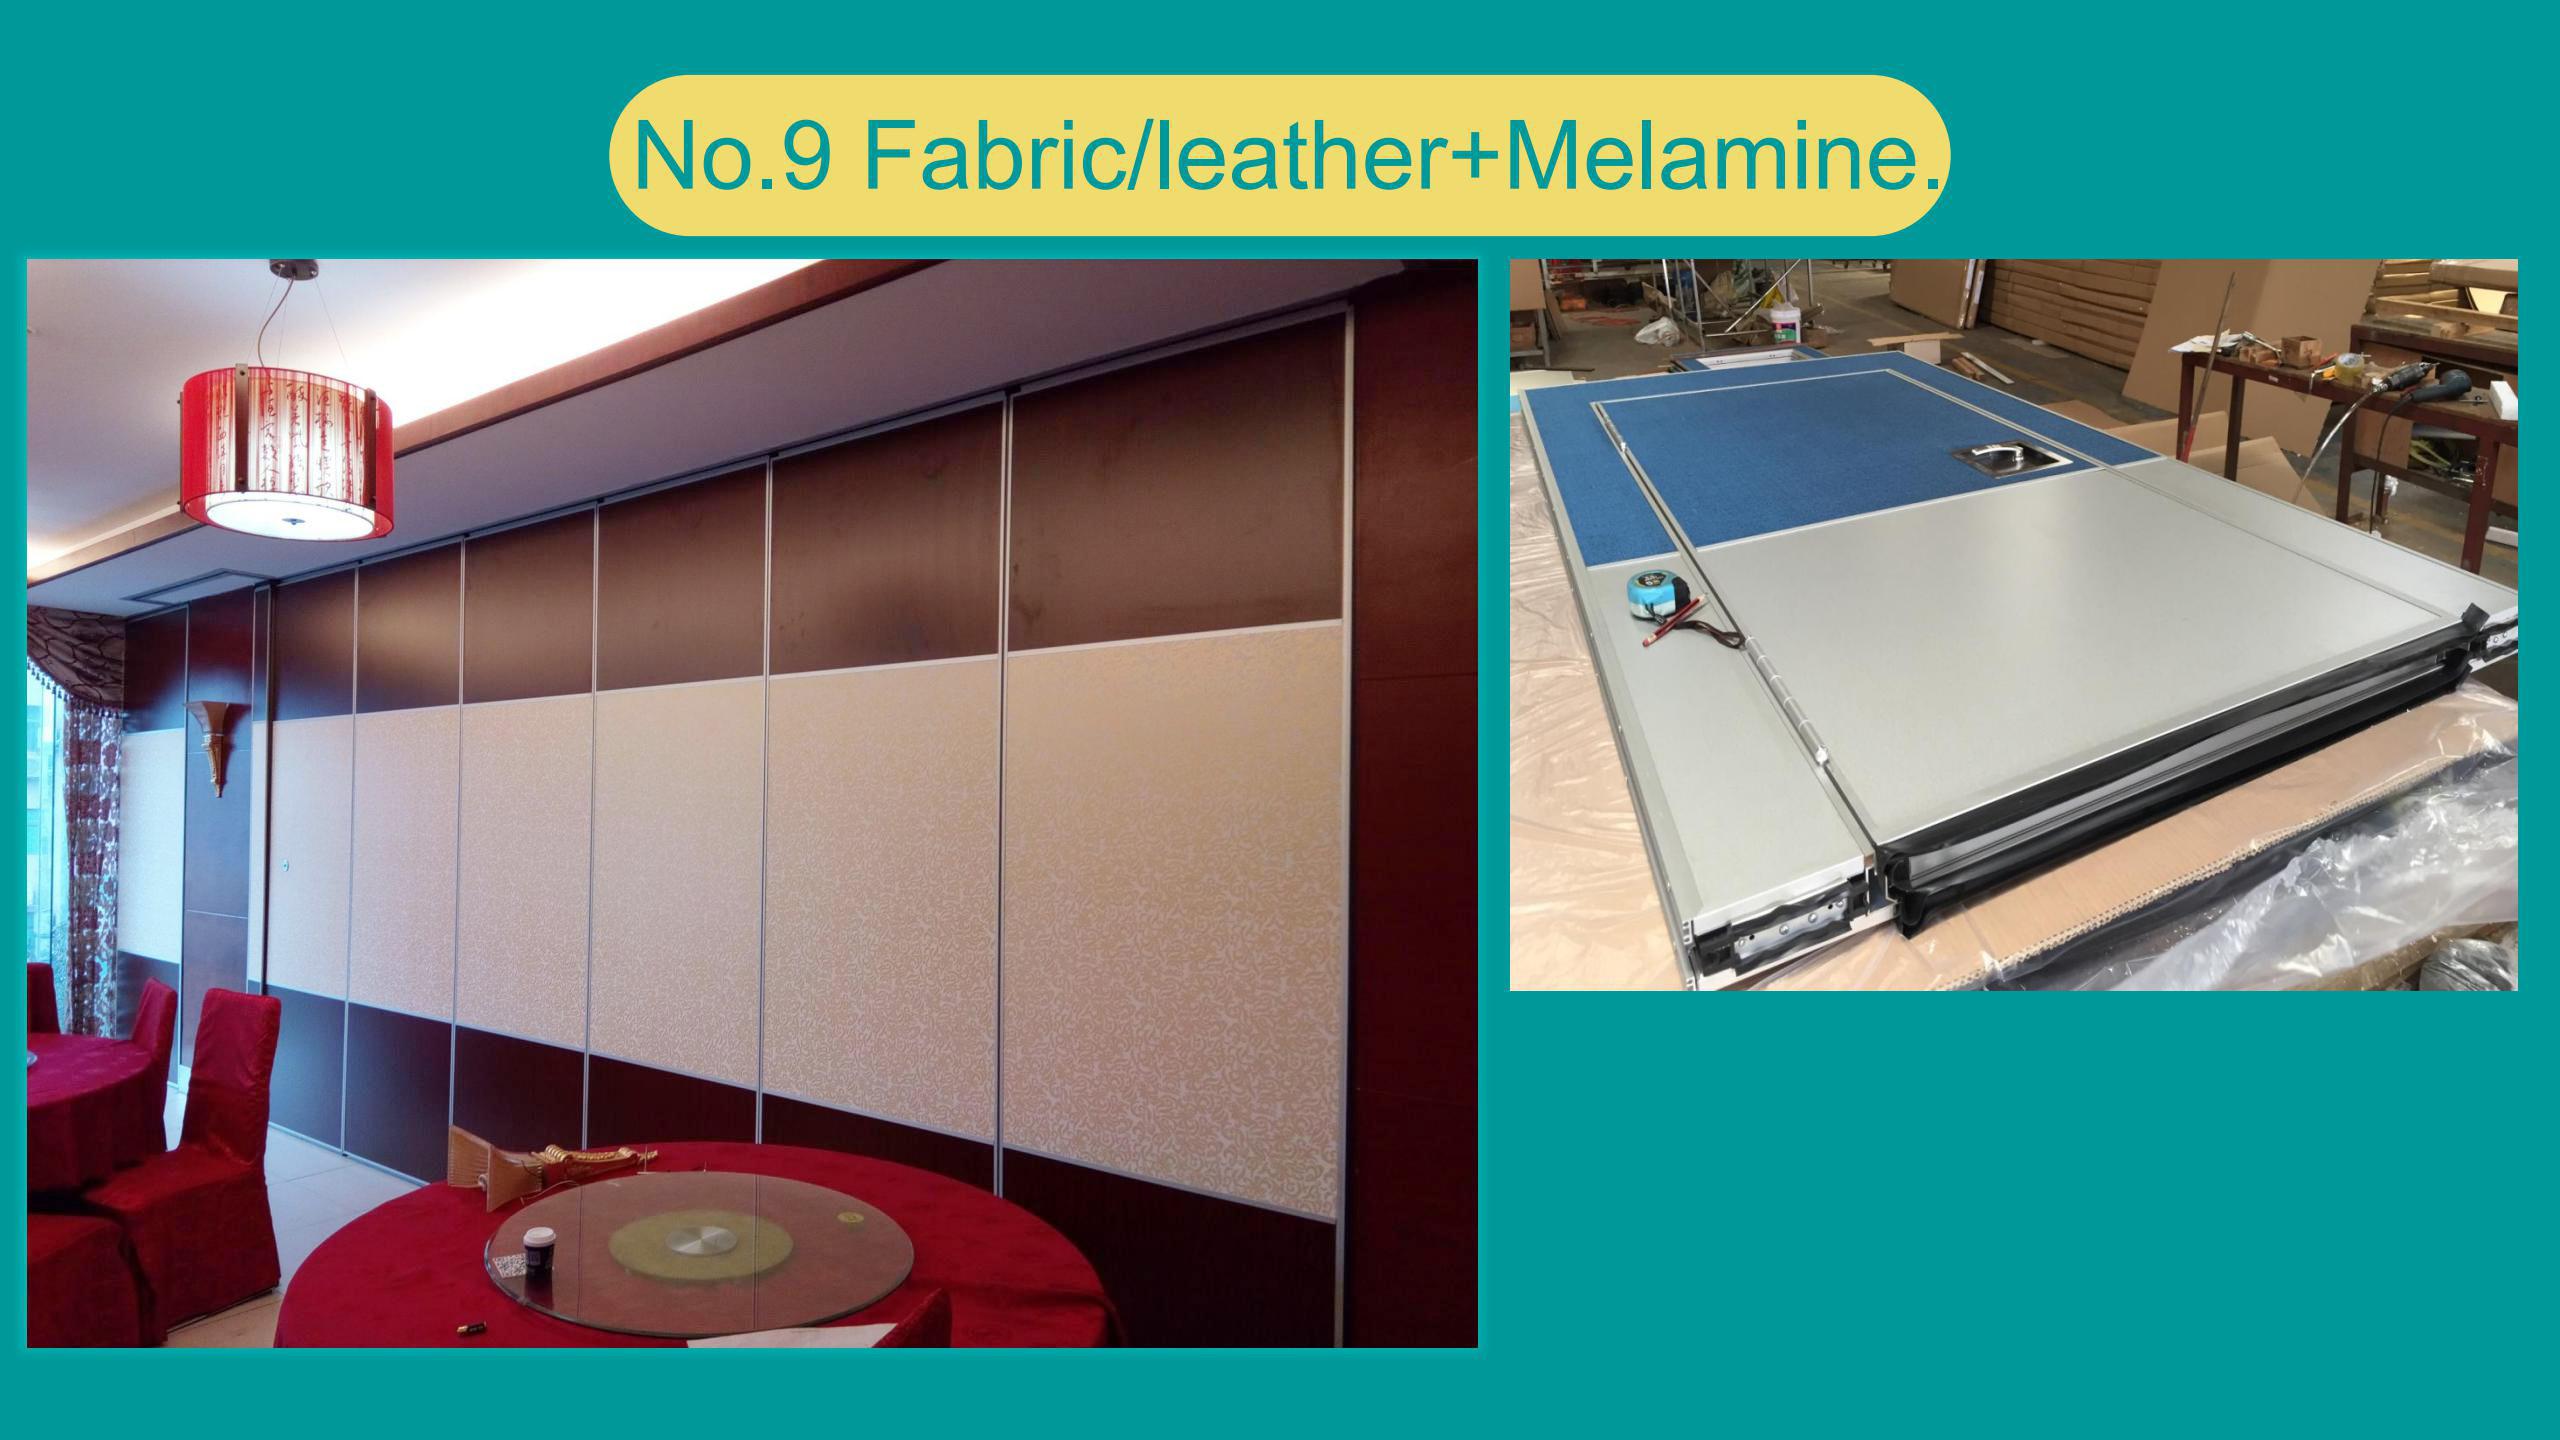 Fabric/leather+Melamine